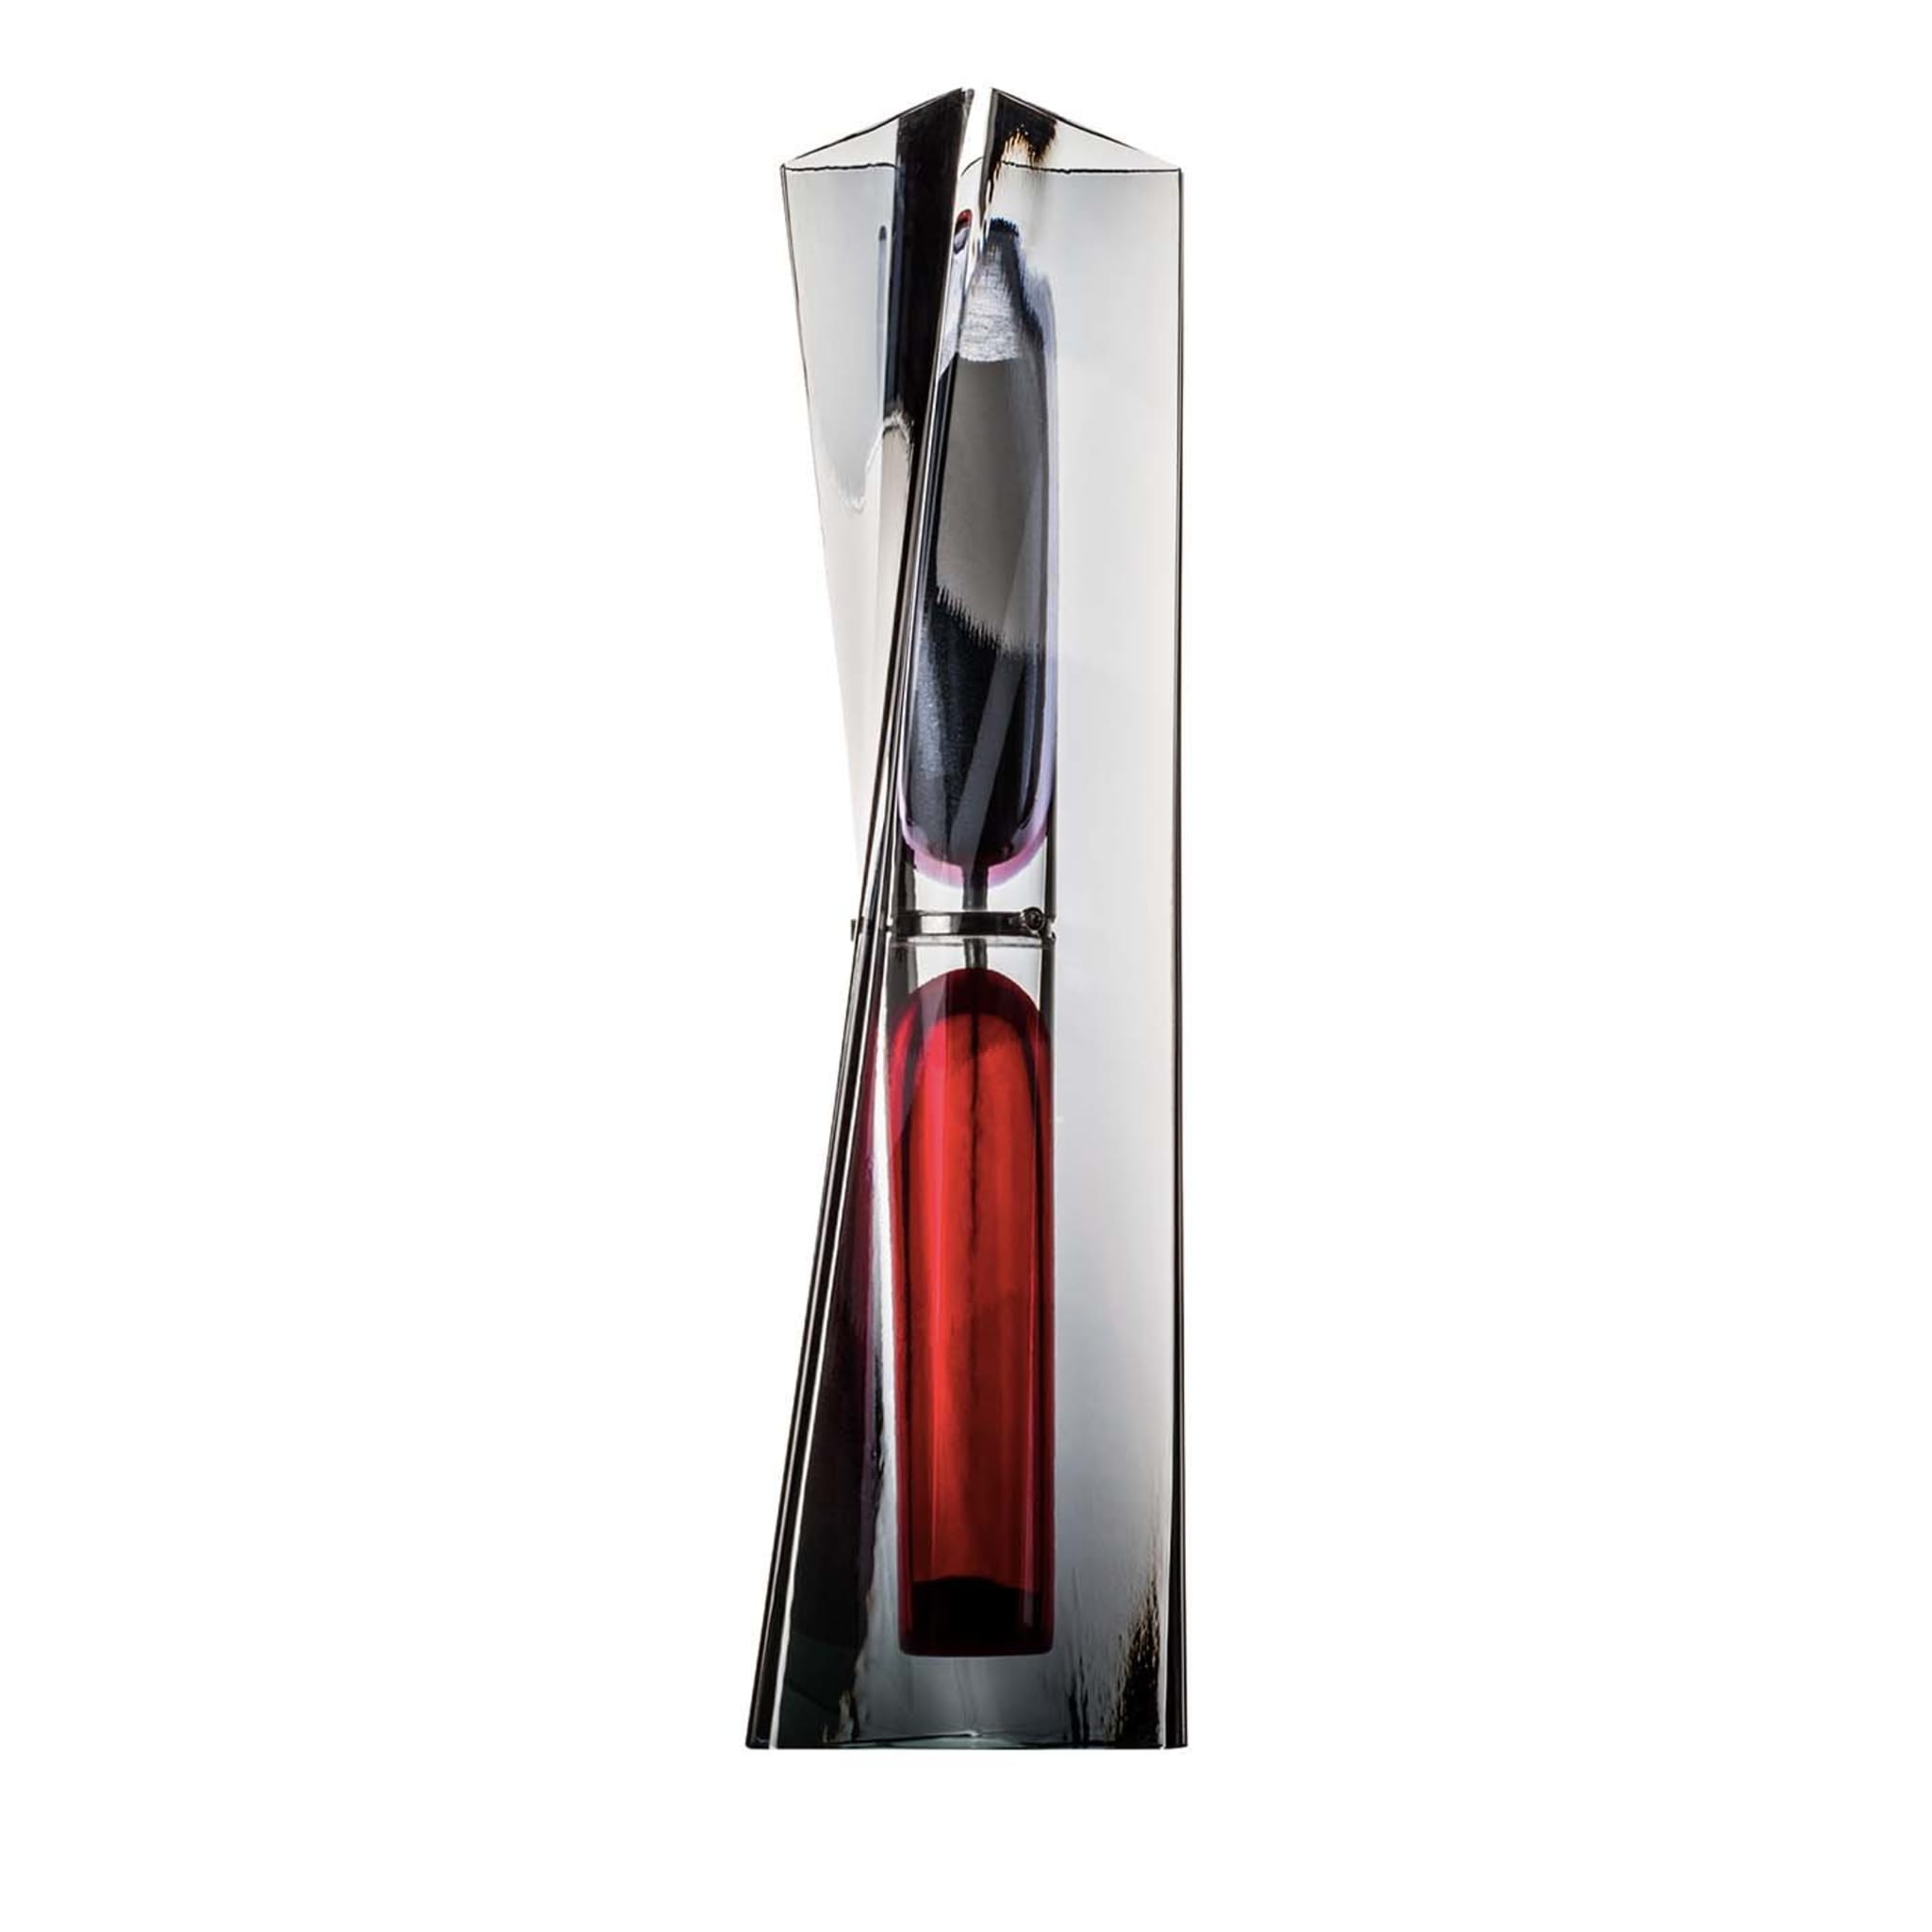 Ando Time Clessidra nera/rossa di Tadao Ando # 1 - Vista principale